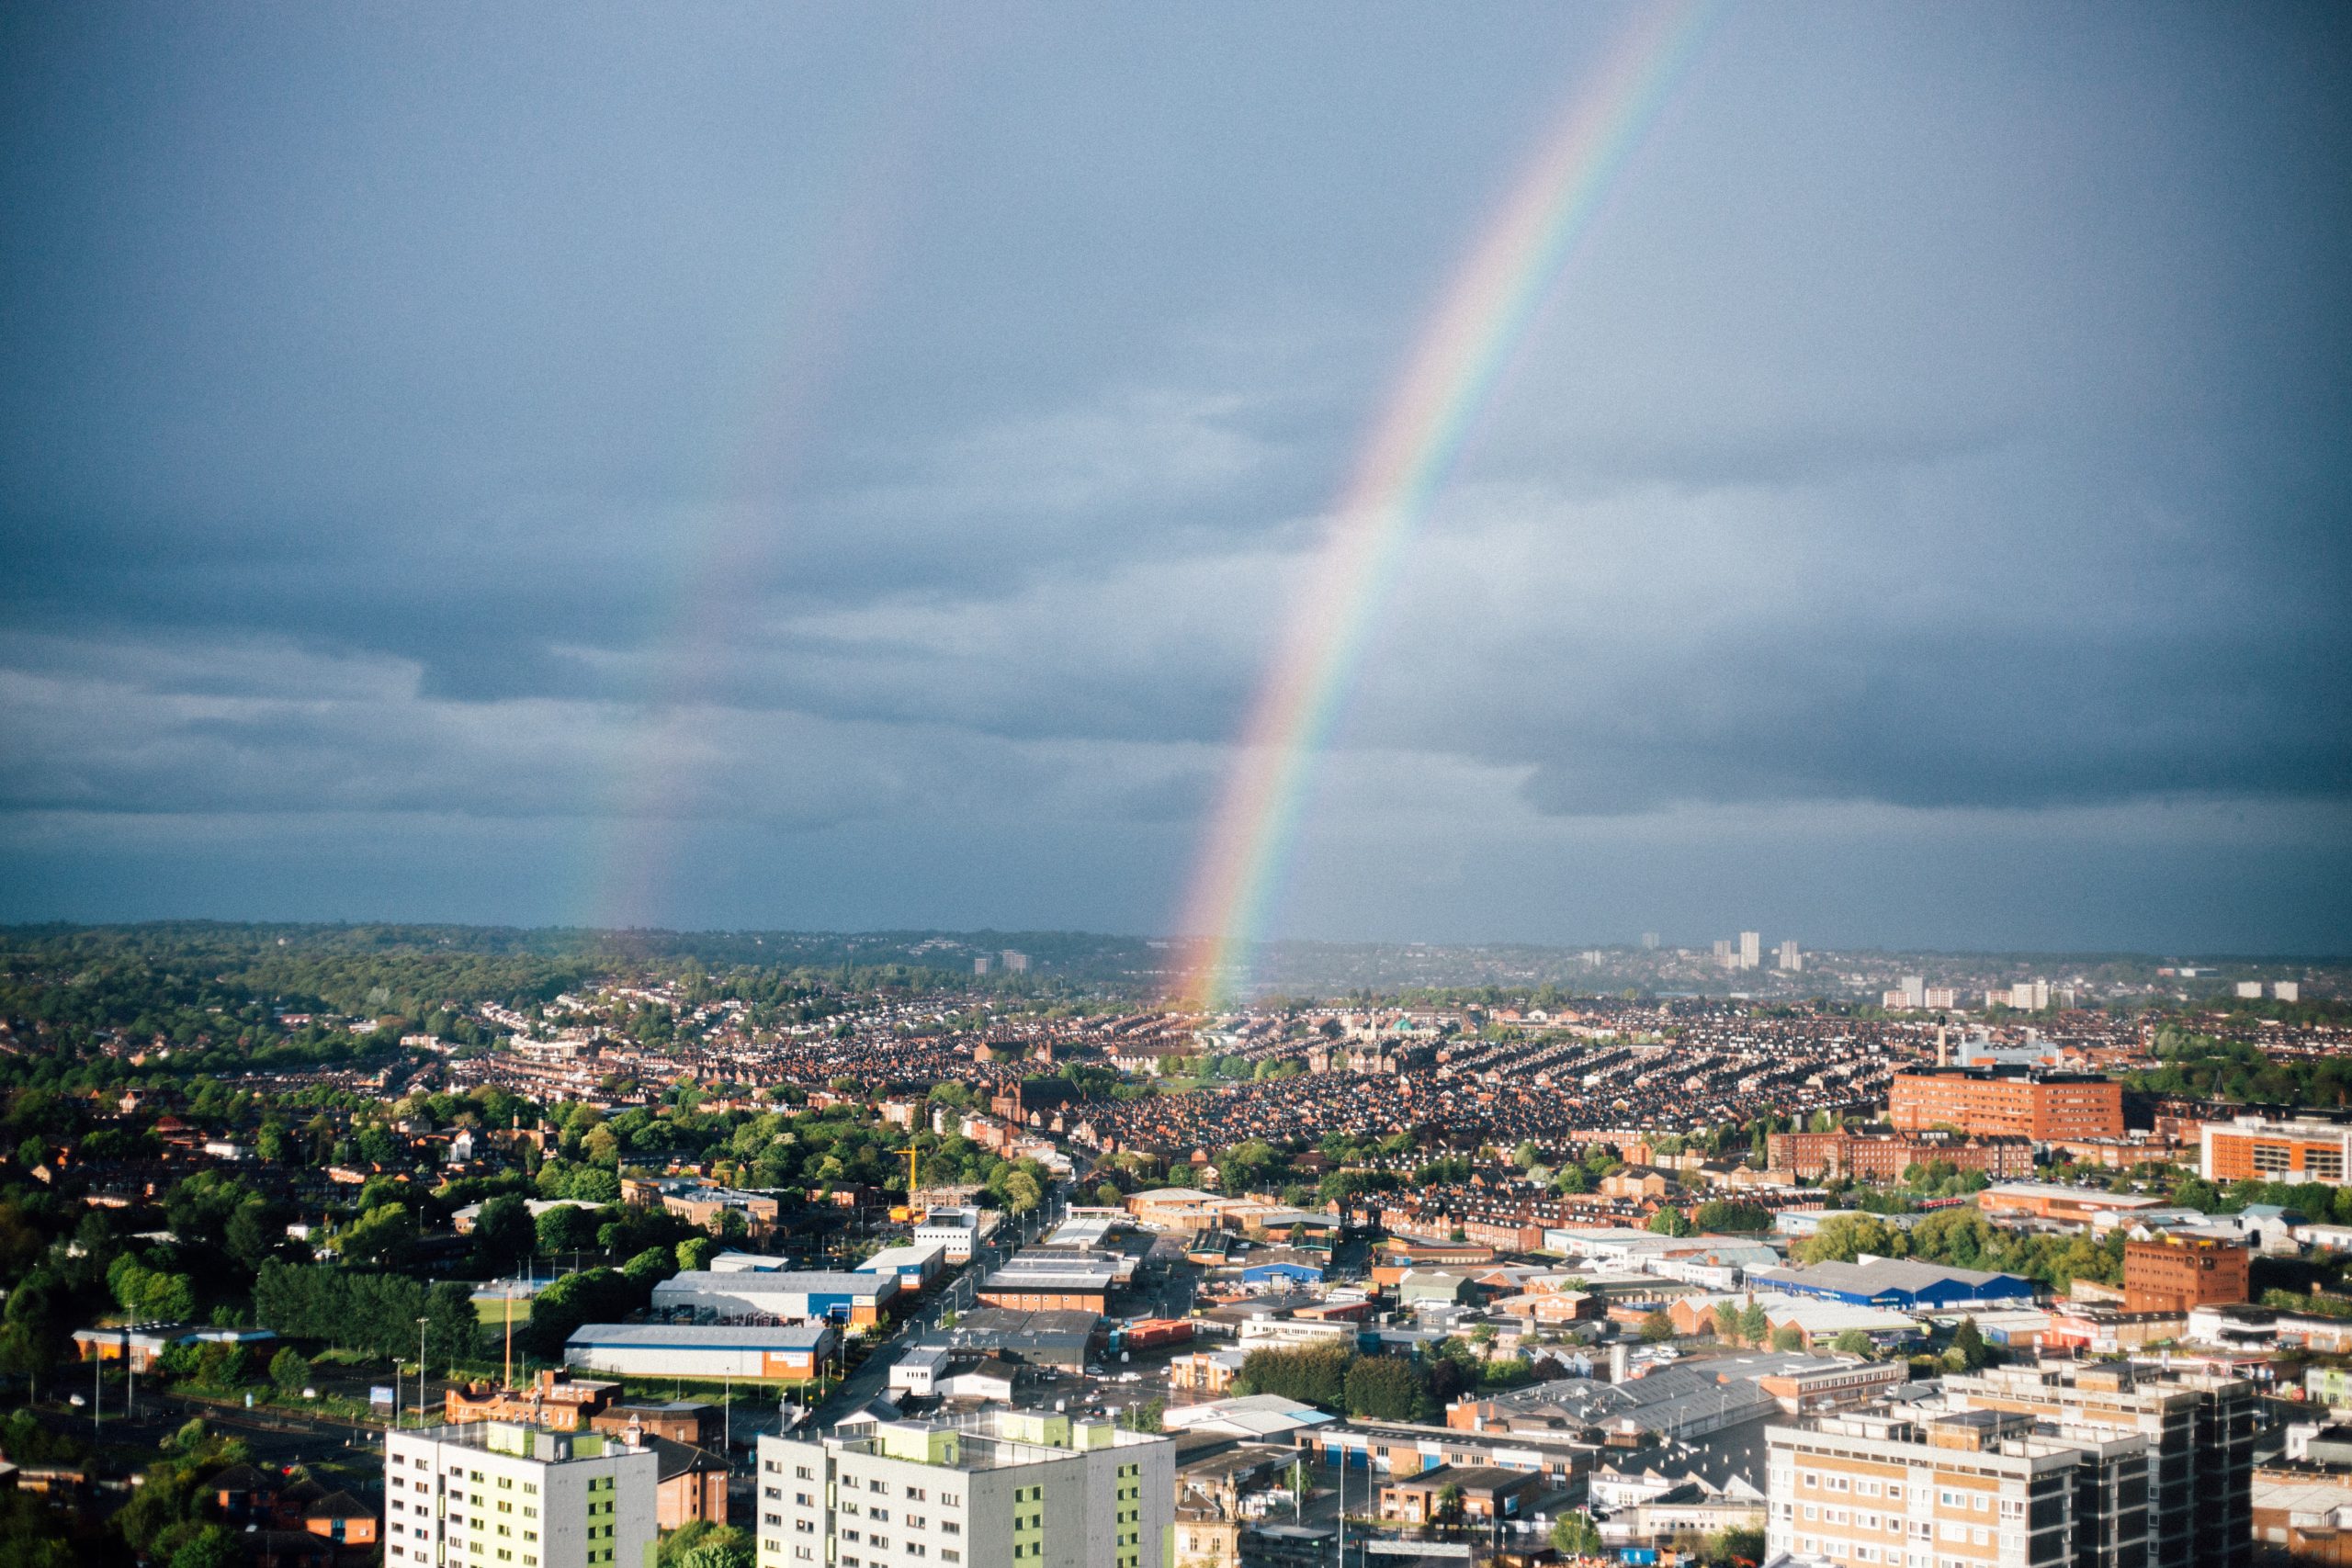 North Leeds skyline with a rainbow